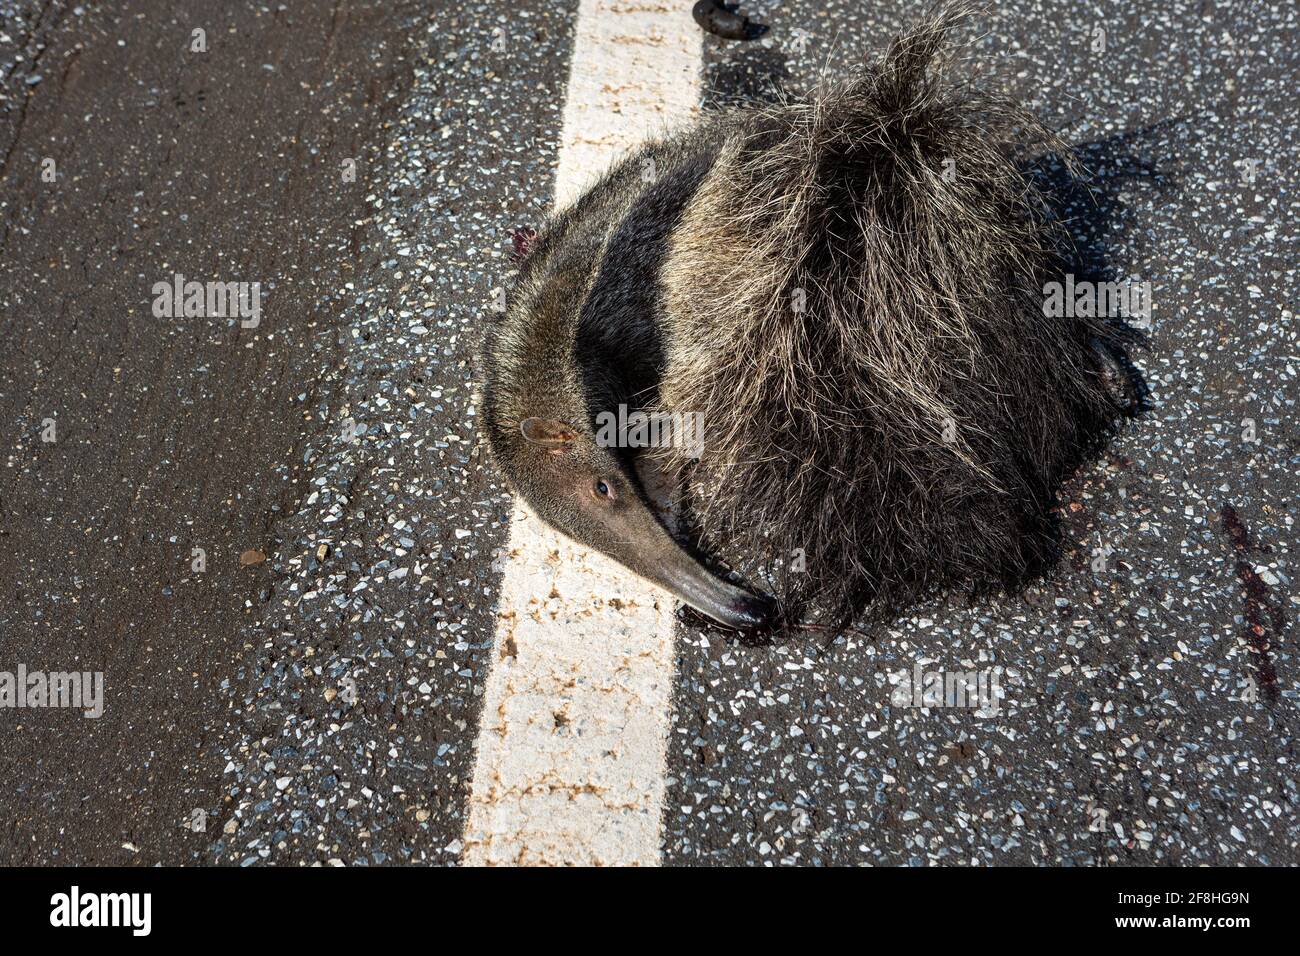 Toter Riesenanteater, Myrmecophaga tridactyla, überfahren, von einem Fahrzeug auf der Straße getötet. Wildes Tier-Roadkill im amazonas-Regenwald, Brasilien. Stockfoto